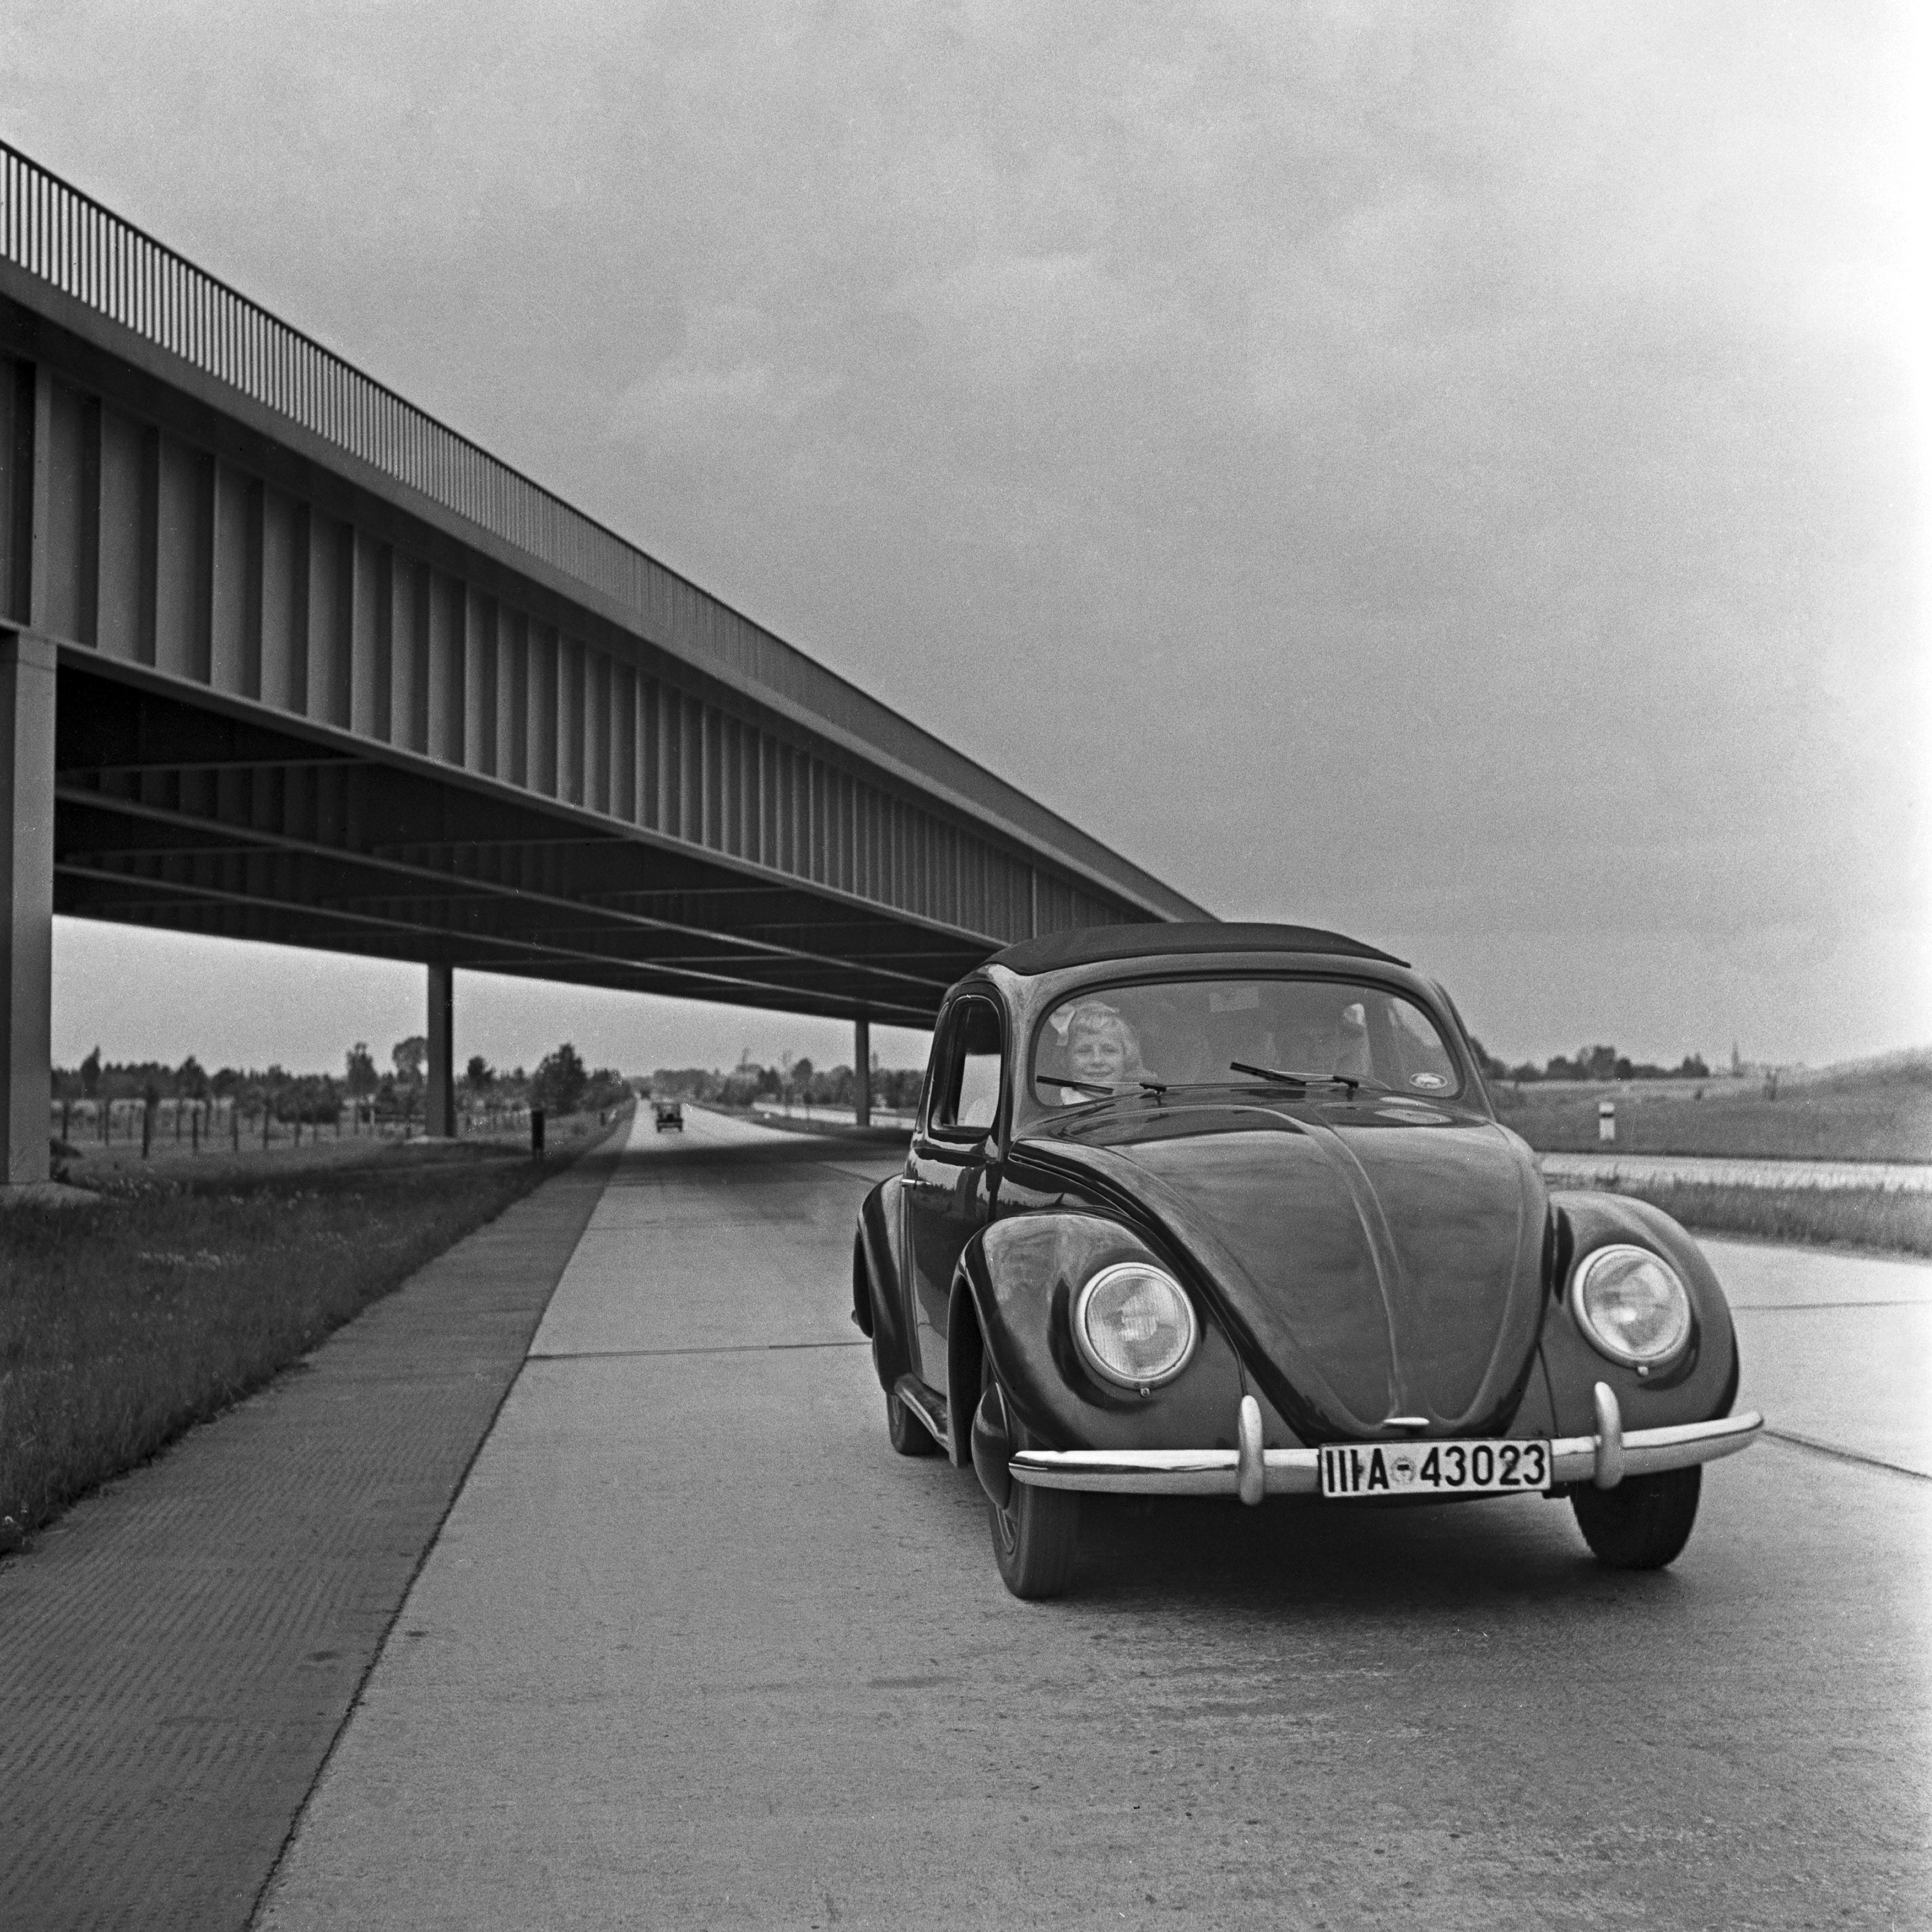 Black and White Photograph Karl Heinrich Lämmel - Le scarabée de Volkswagen sur le chemin de fer, Allemagne 1937 Imprimé plus tard 